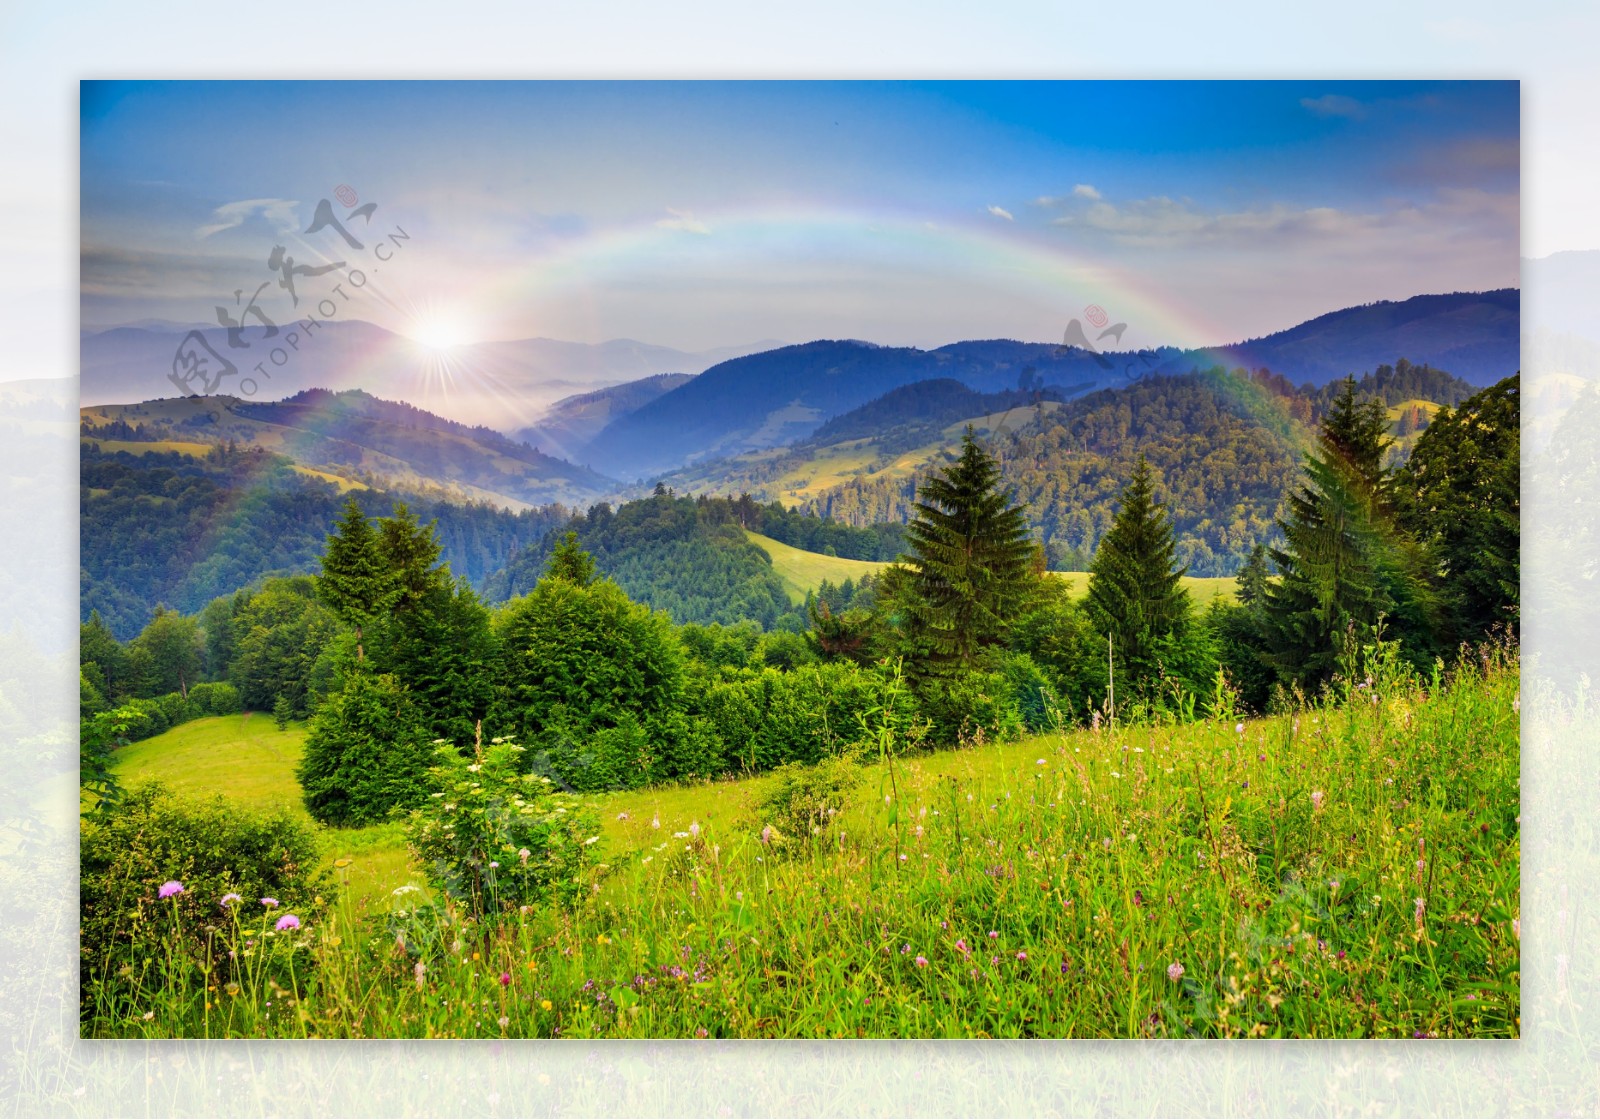 彩虹和山峰景色图片